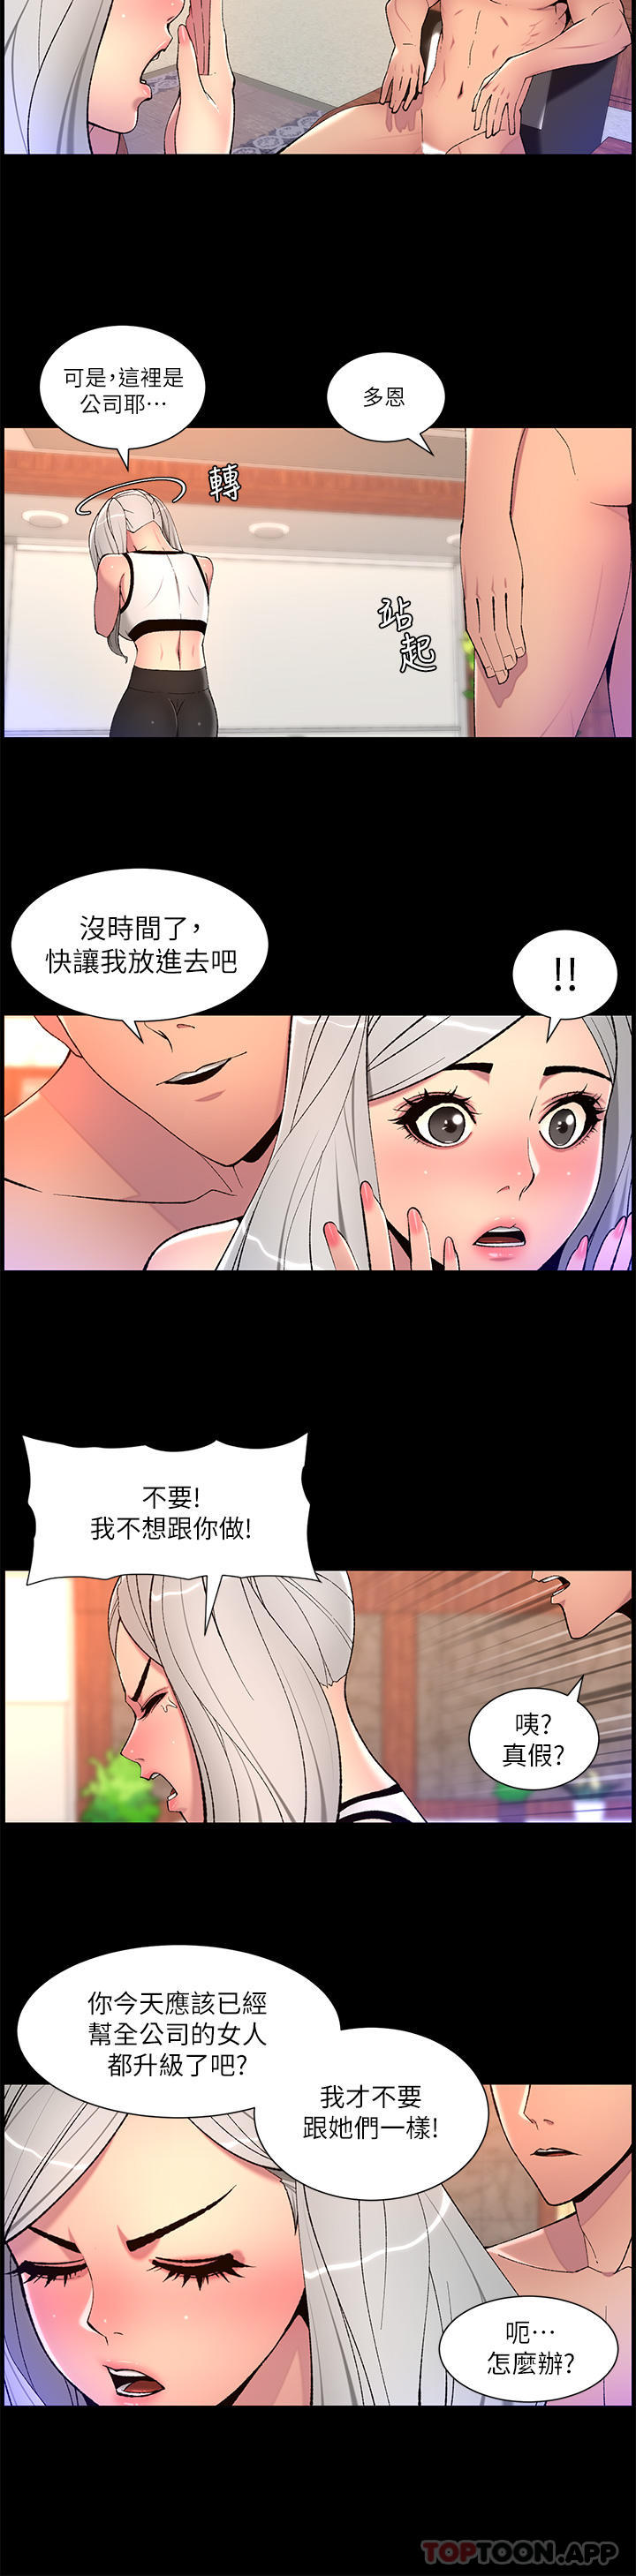 韩国污漫画 帝王App 第68话-把我弄湿就得负责 9